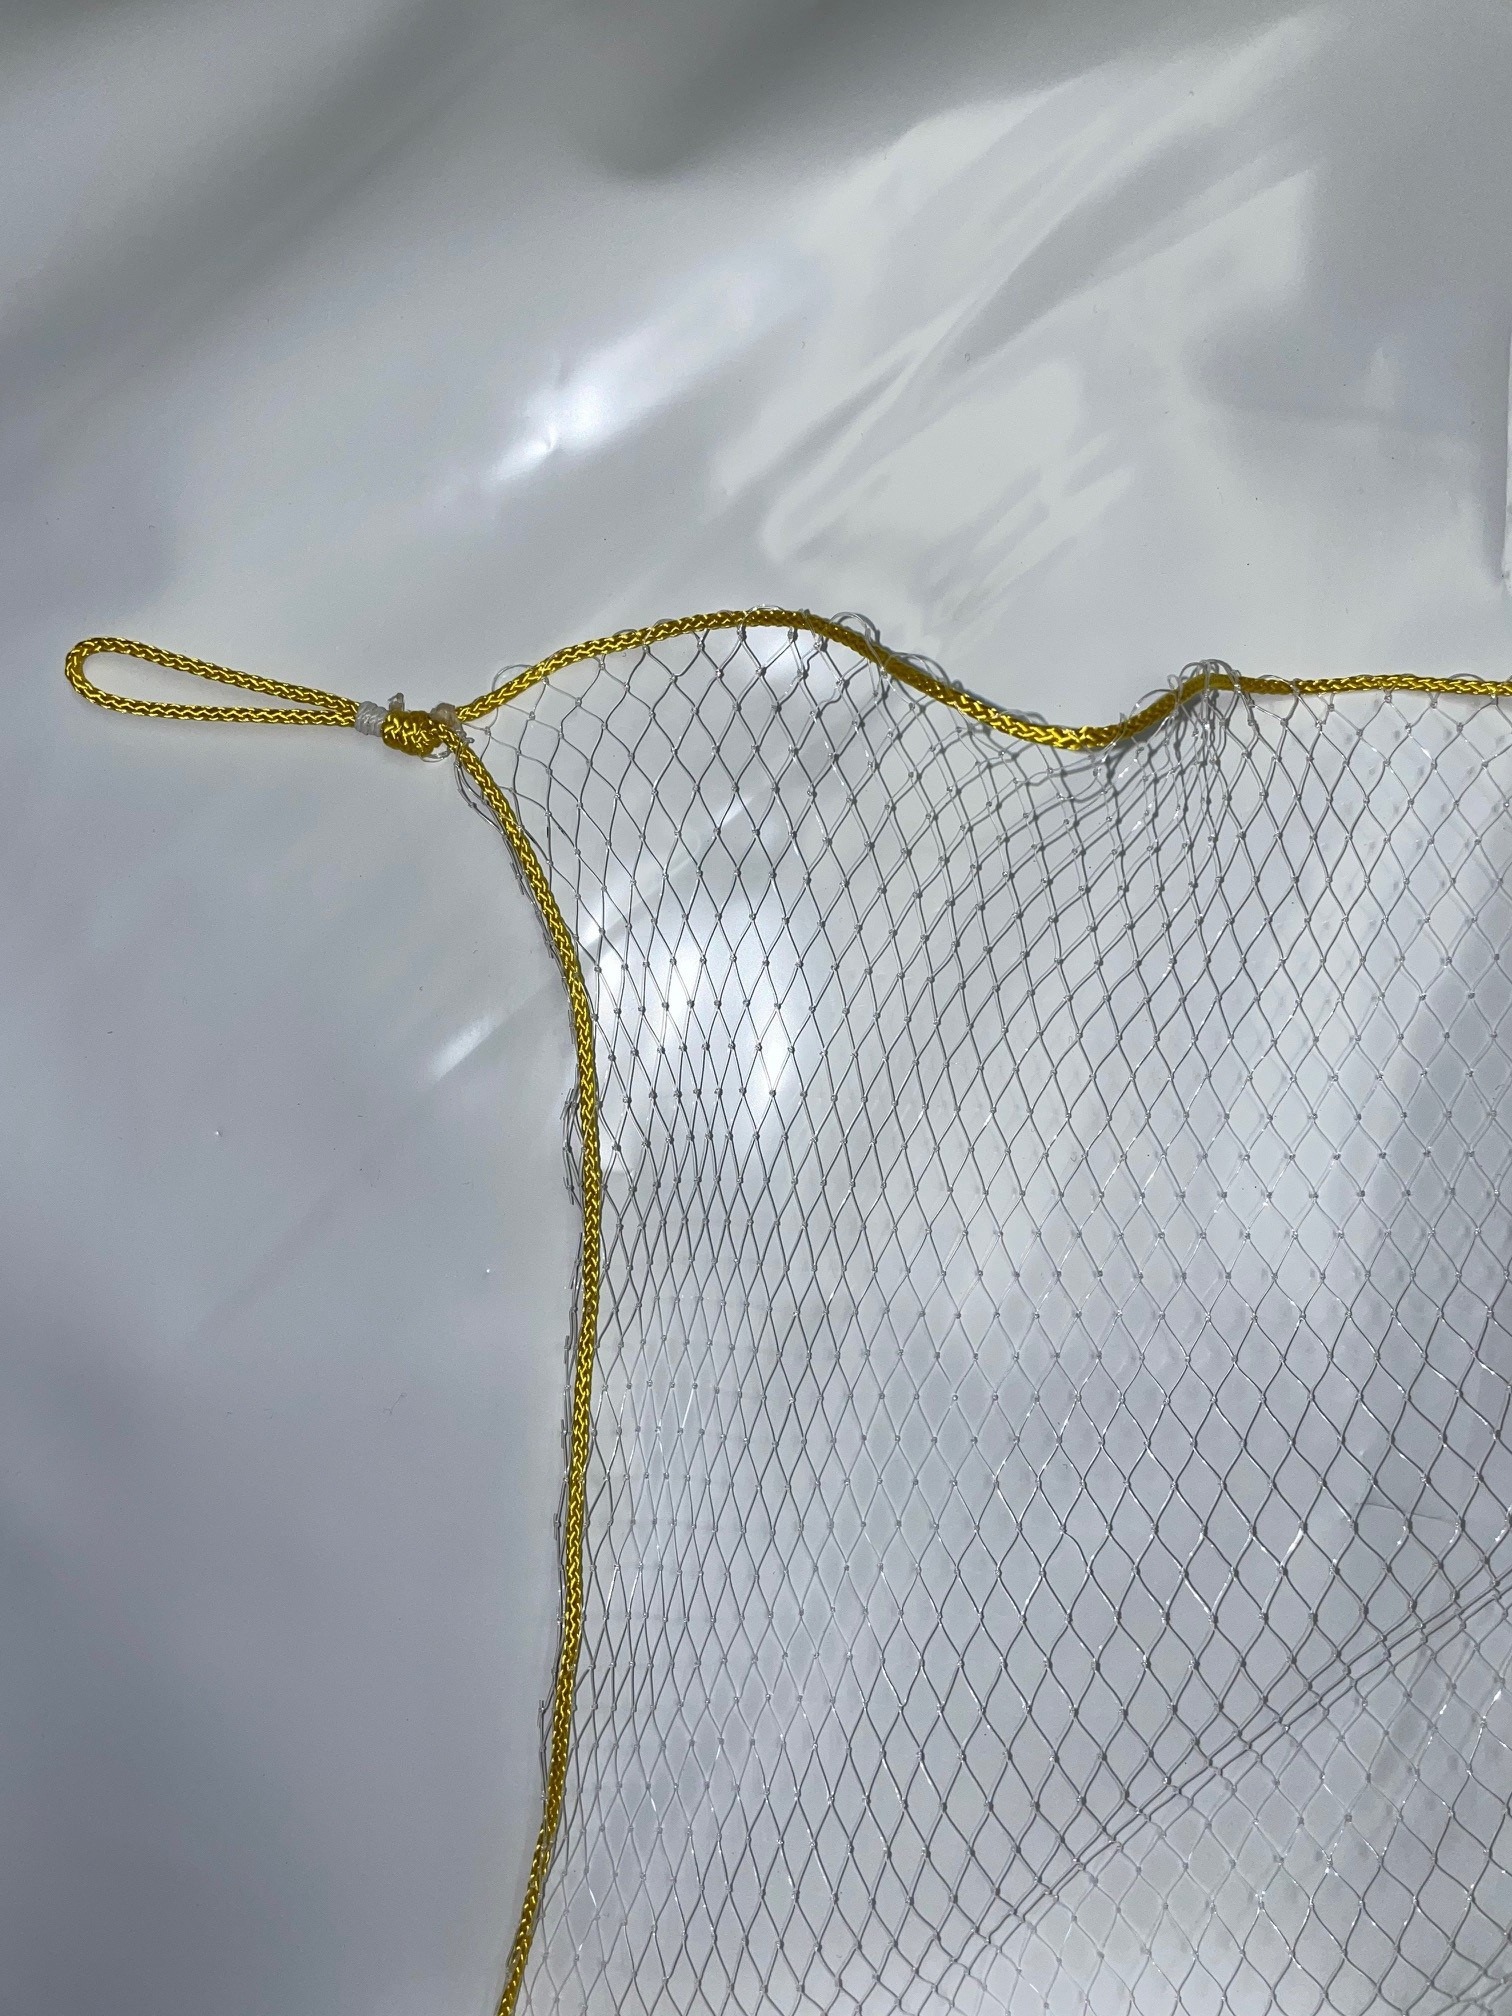 6 x 6 Mono Lift Net - Duluth Fish NetsDuluth Fish Nets